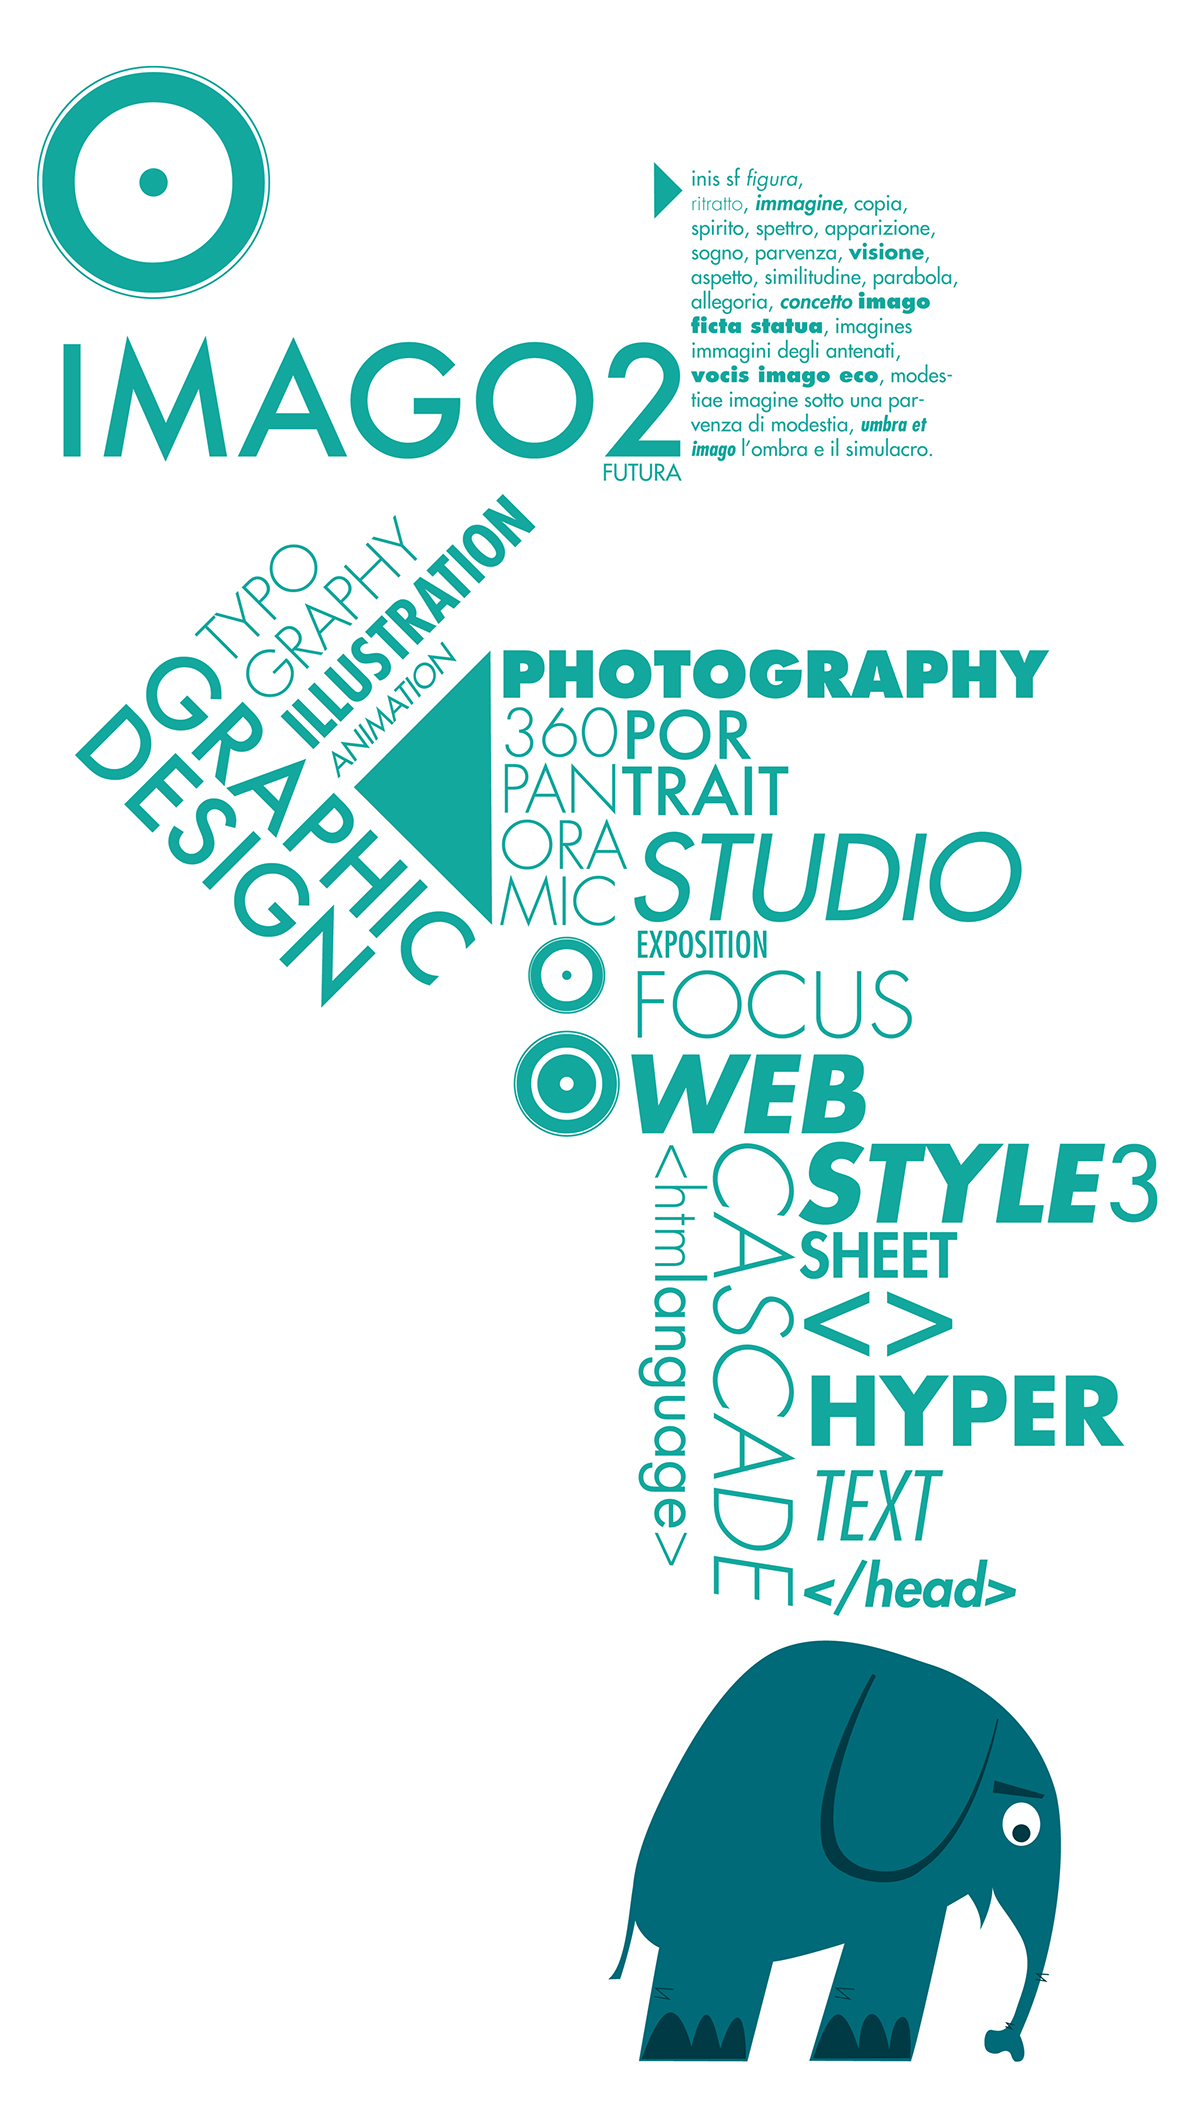 Futura  font  graphic design